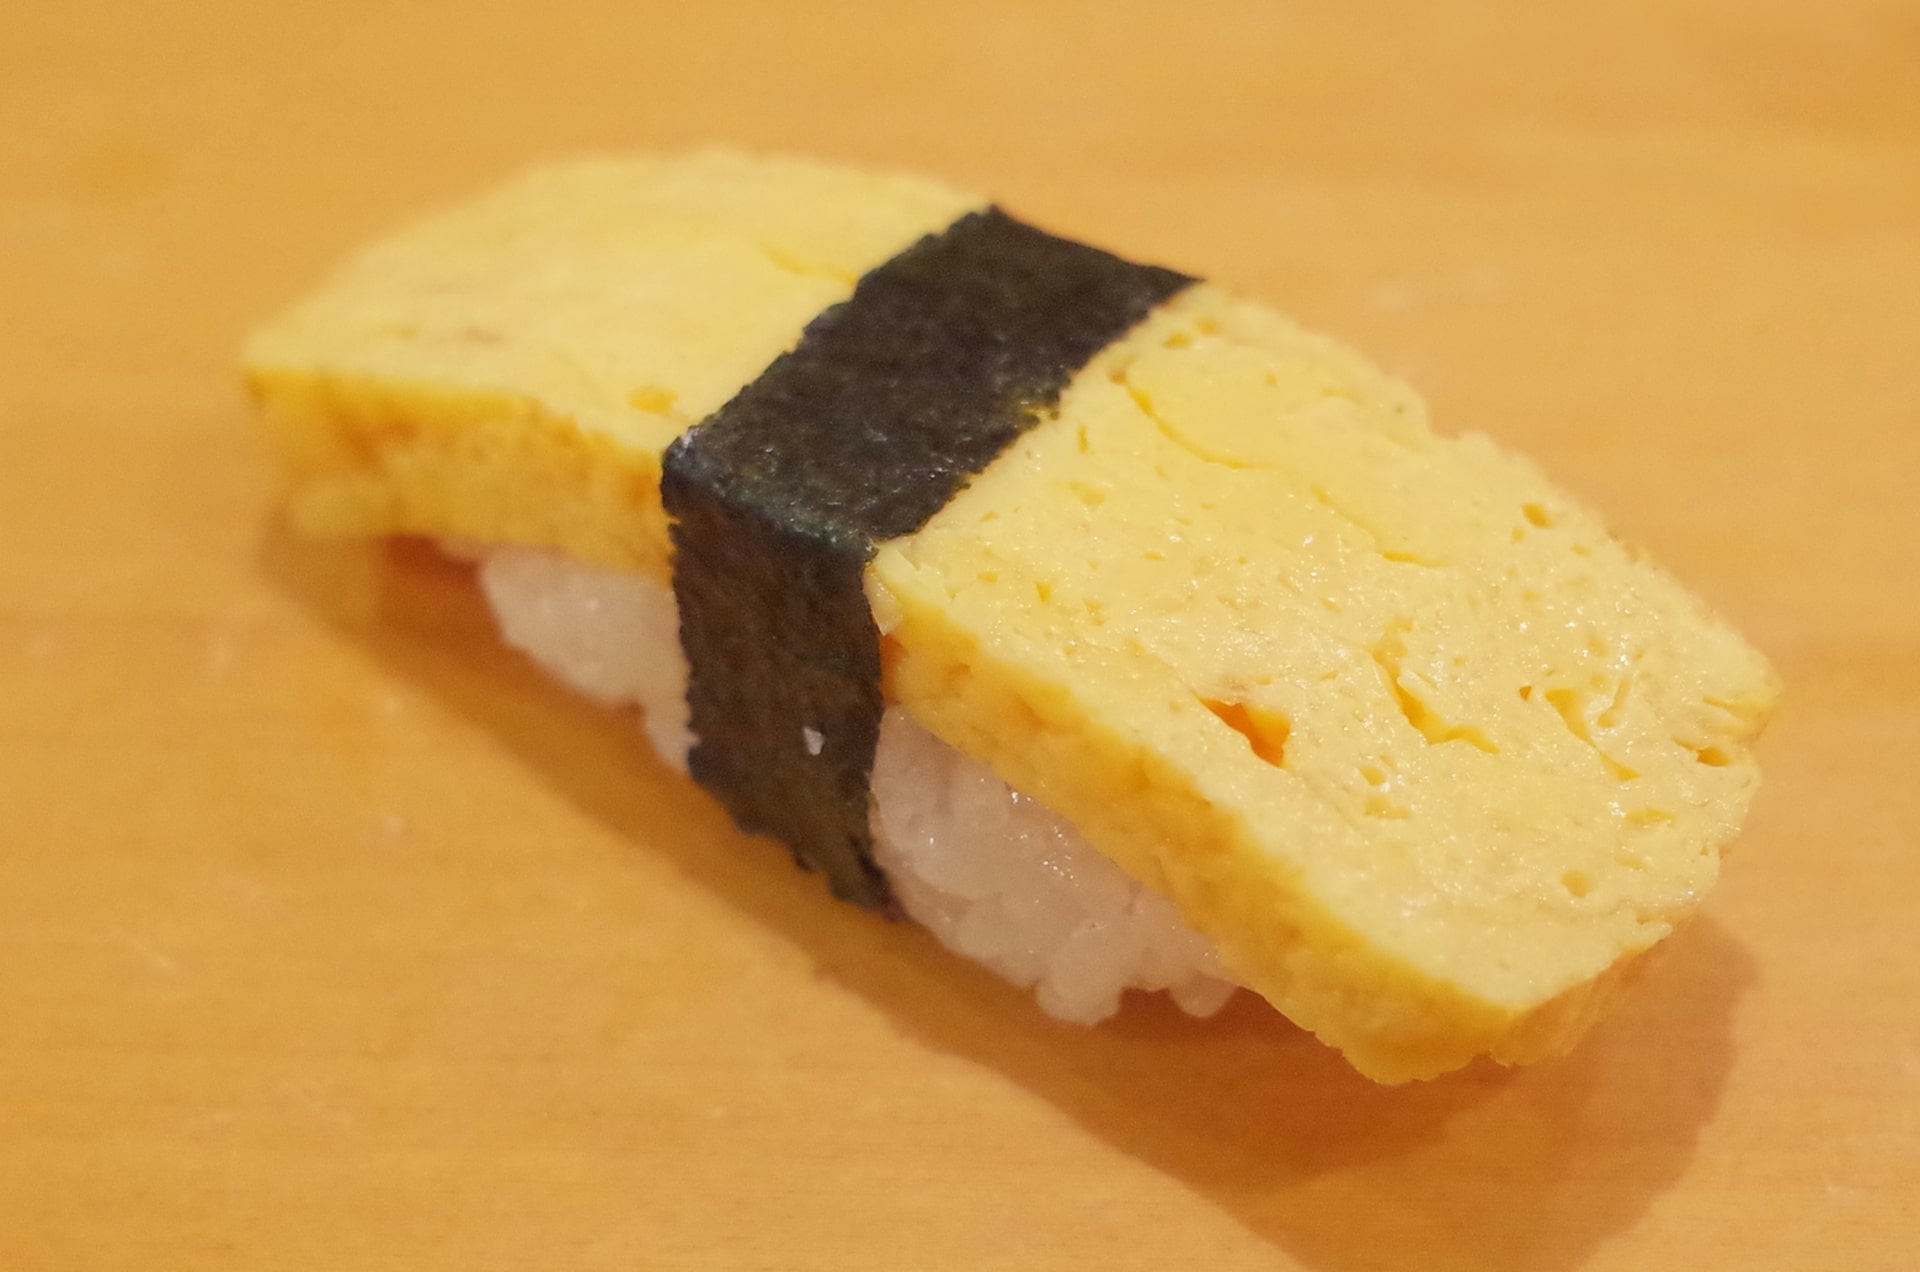 tamago sushi